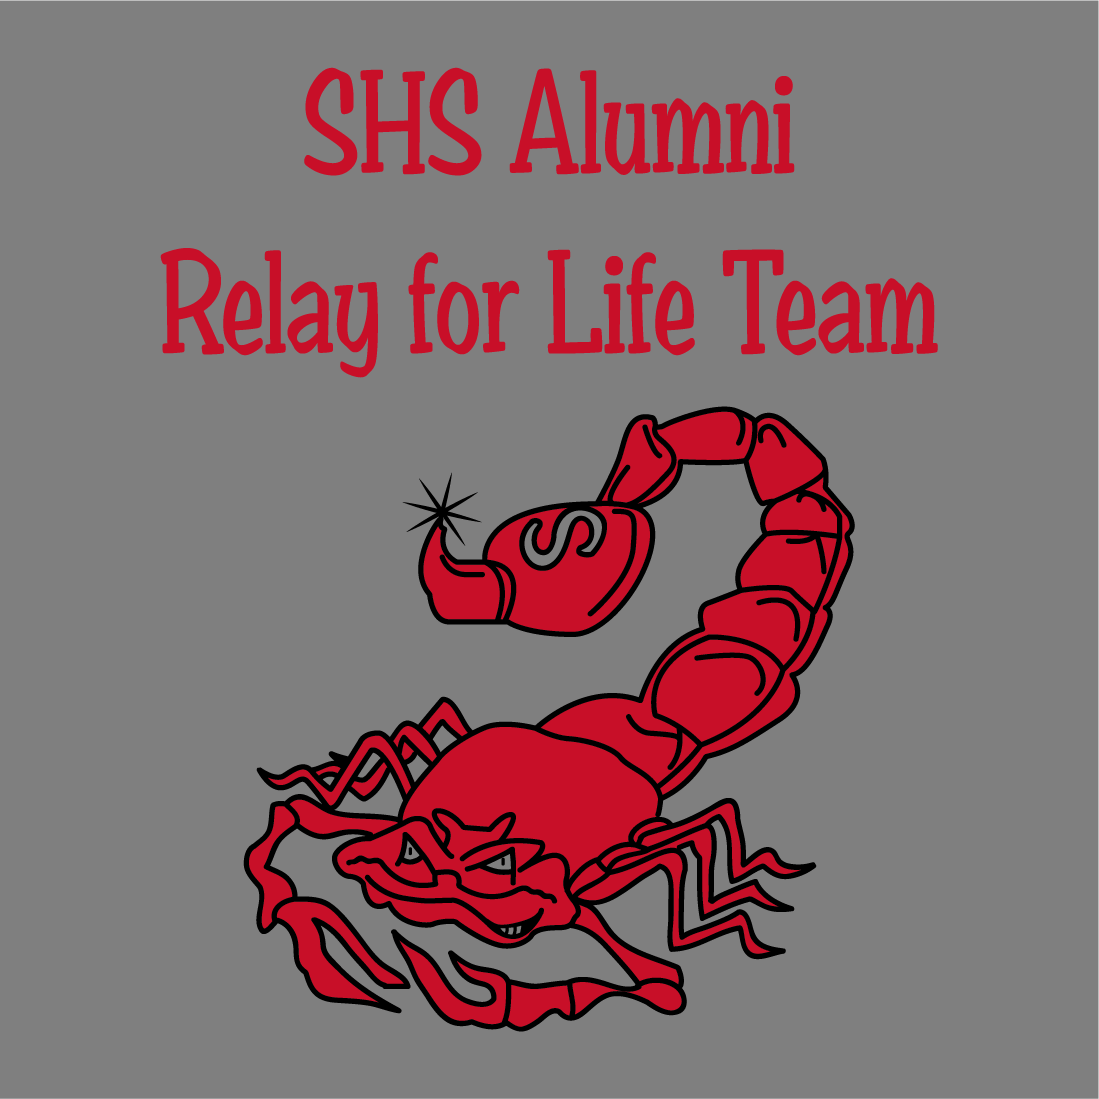 SHS Alumni Relay for Life Team shirt design - zoomed